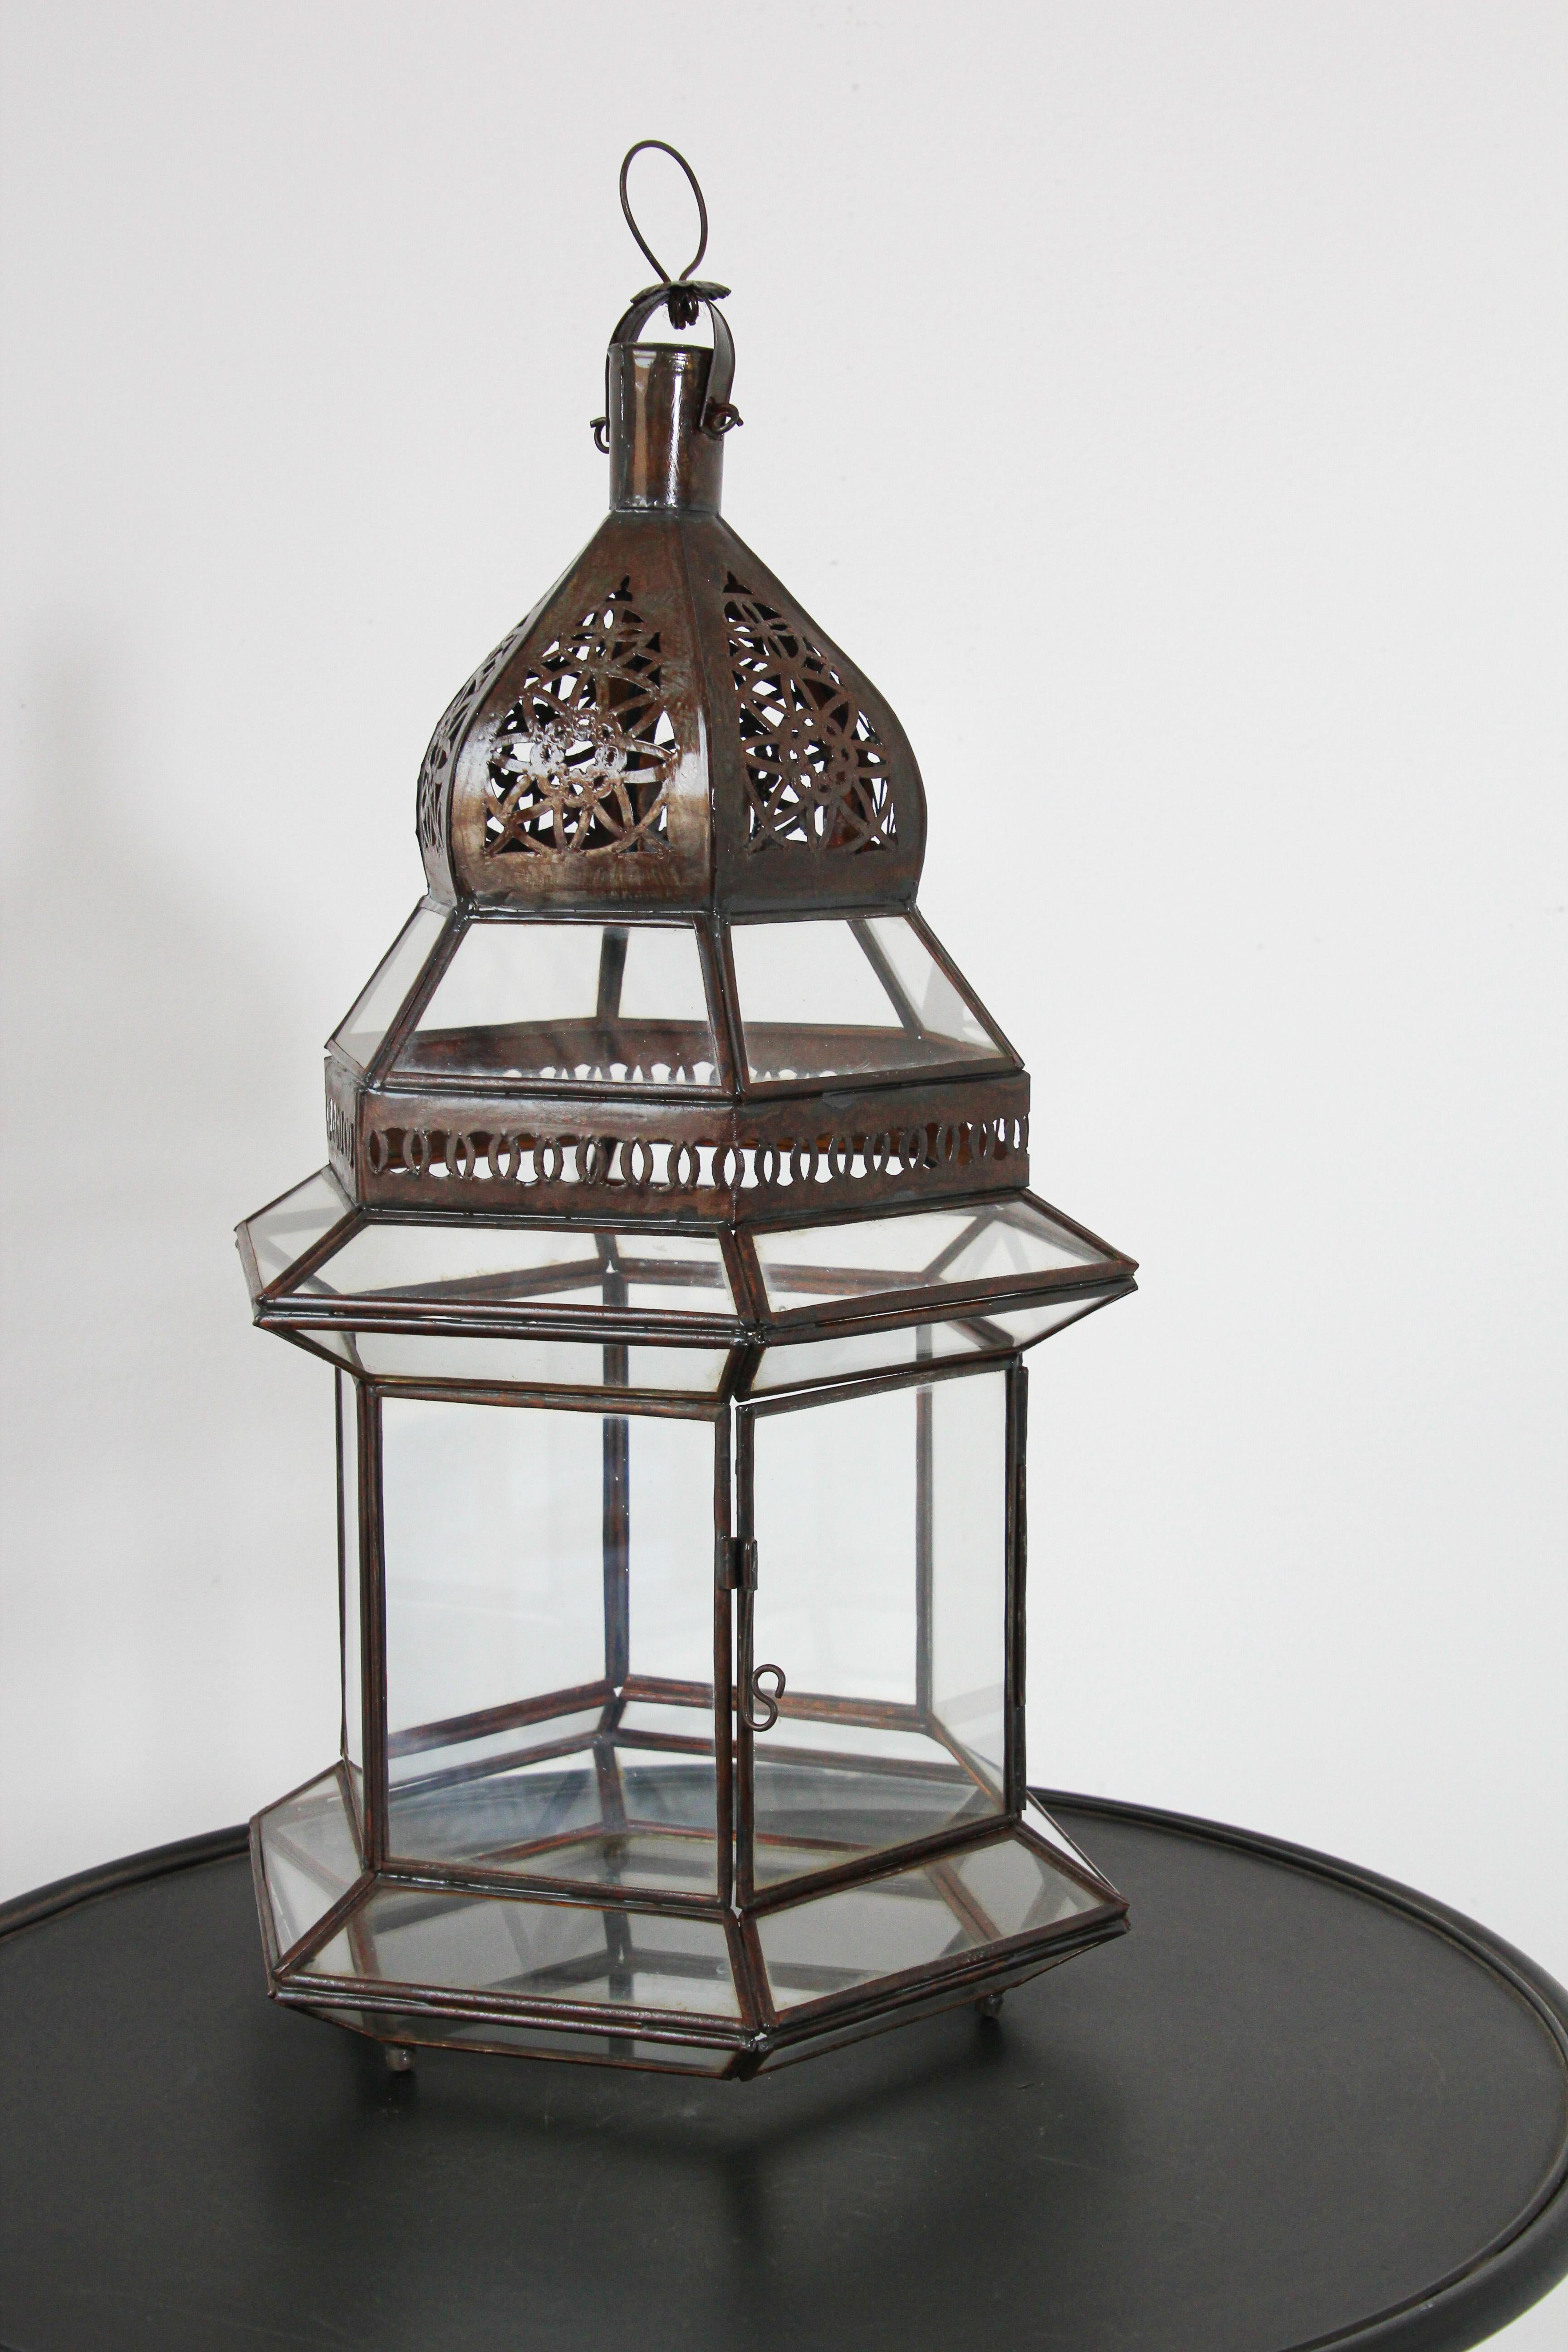 Große marokkanische Laternen aus Metall und klarem Glas.Hurrikan-Kerzenlampe in sechseckiger Form mit rostfarbenem Vintage-Metall-Finish.Die Oberseite der Laterne ist handgeschnitten mit maurischen Mustern.Die Laterne hat eine kleine Tür, um das